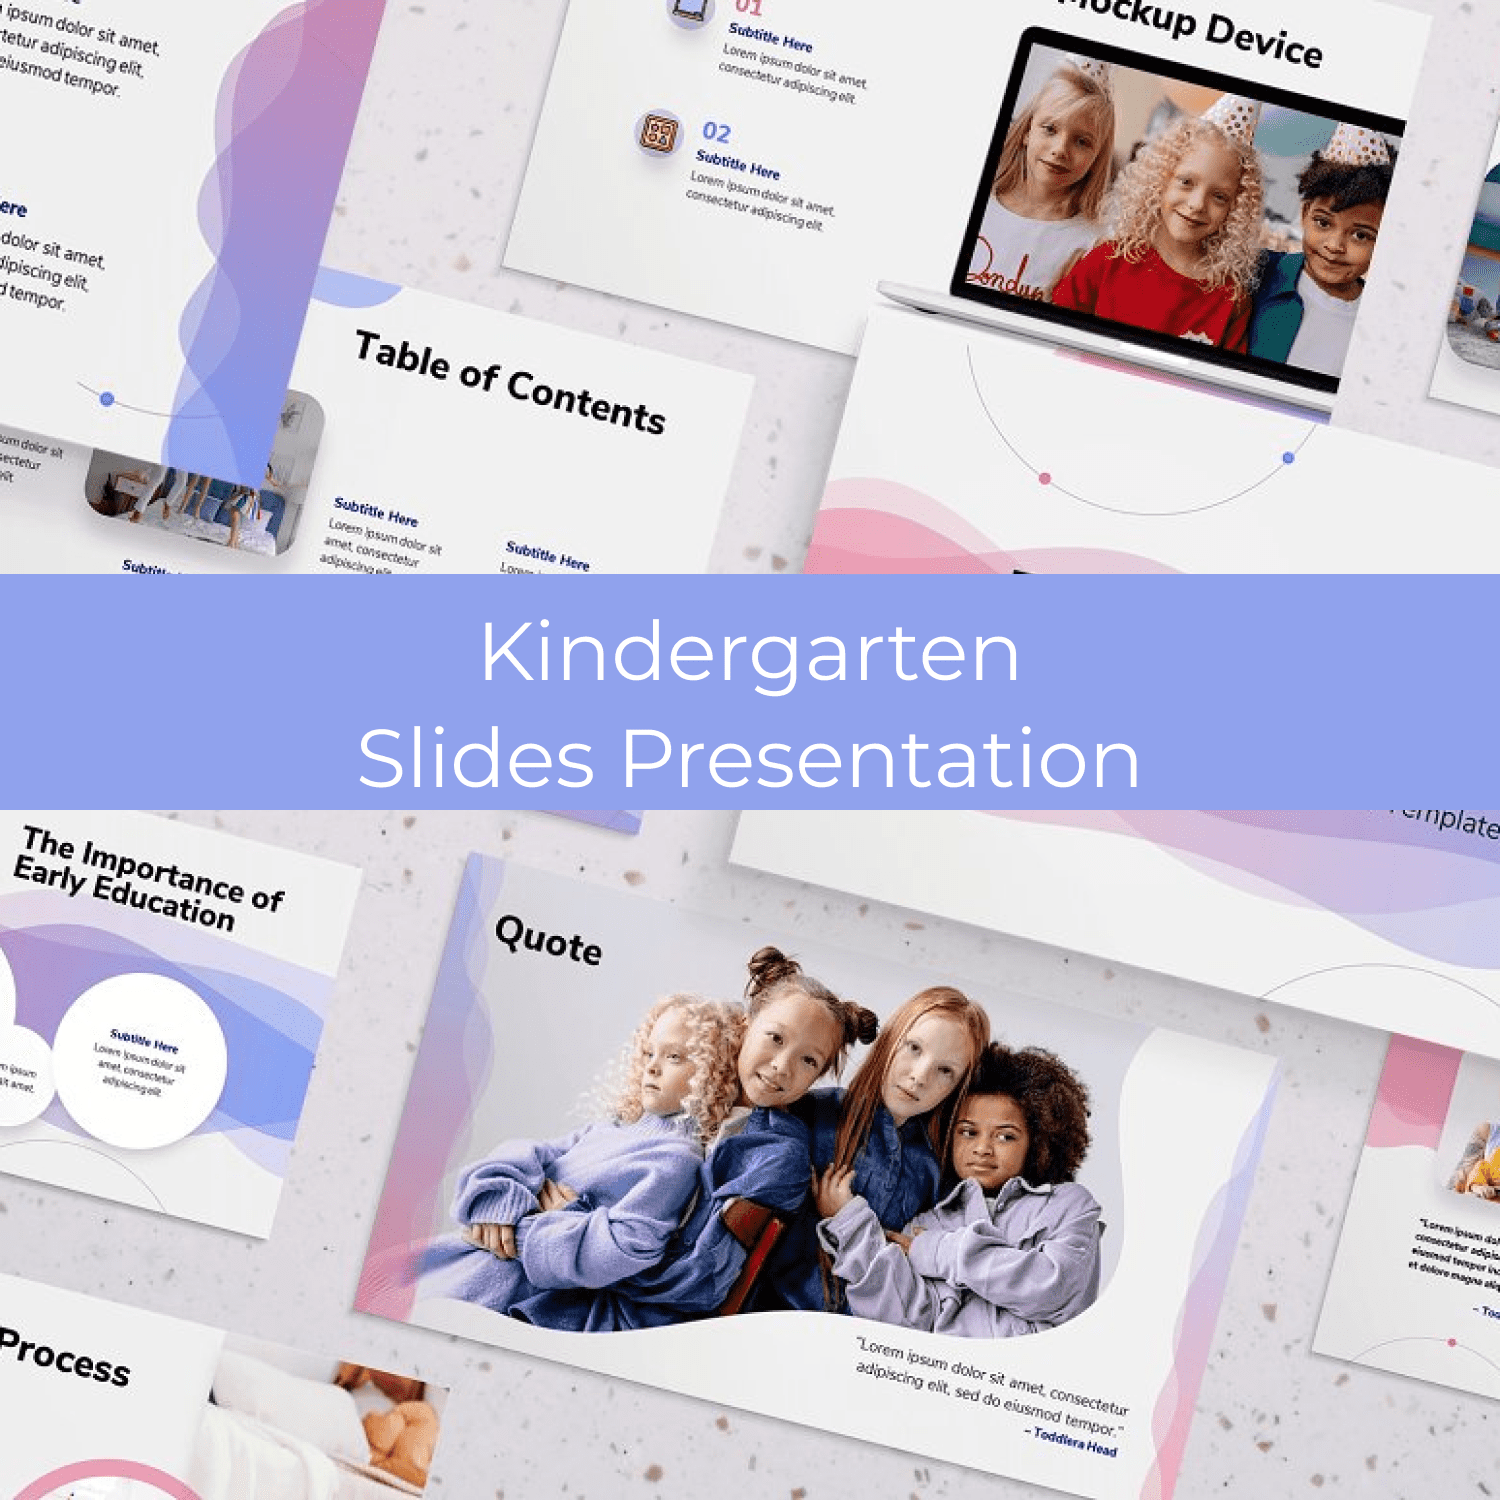 Kindergarten Slides Presentation cover.